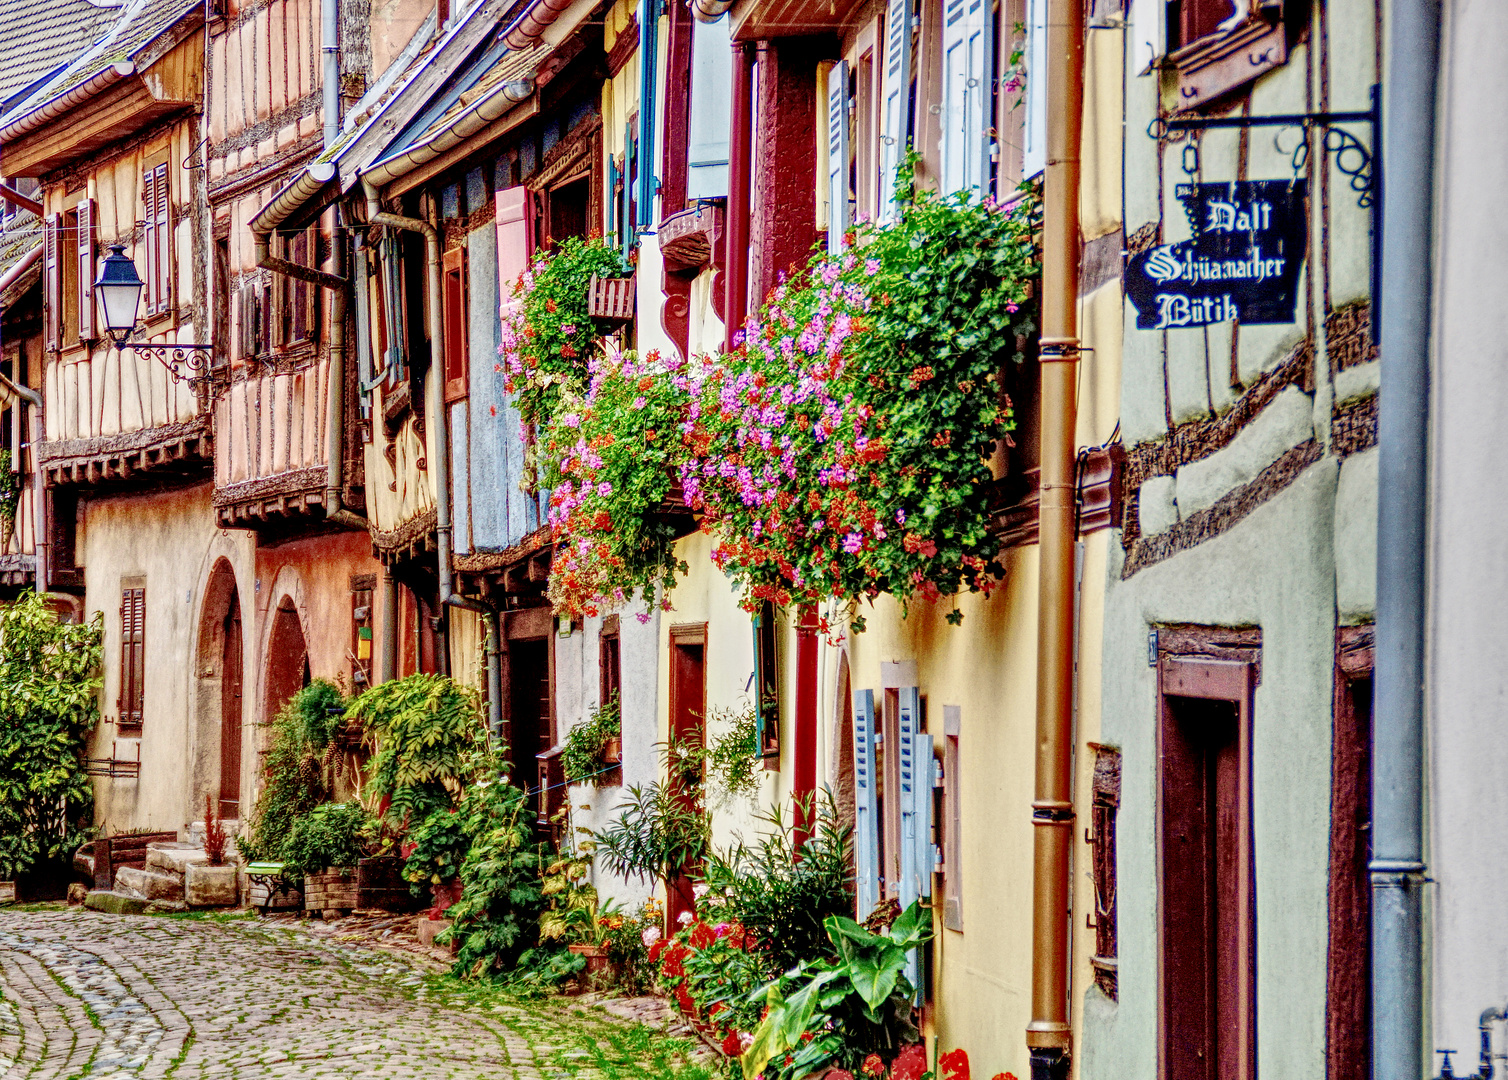 Eguisheim bei Colmar